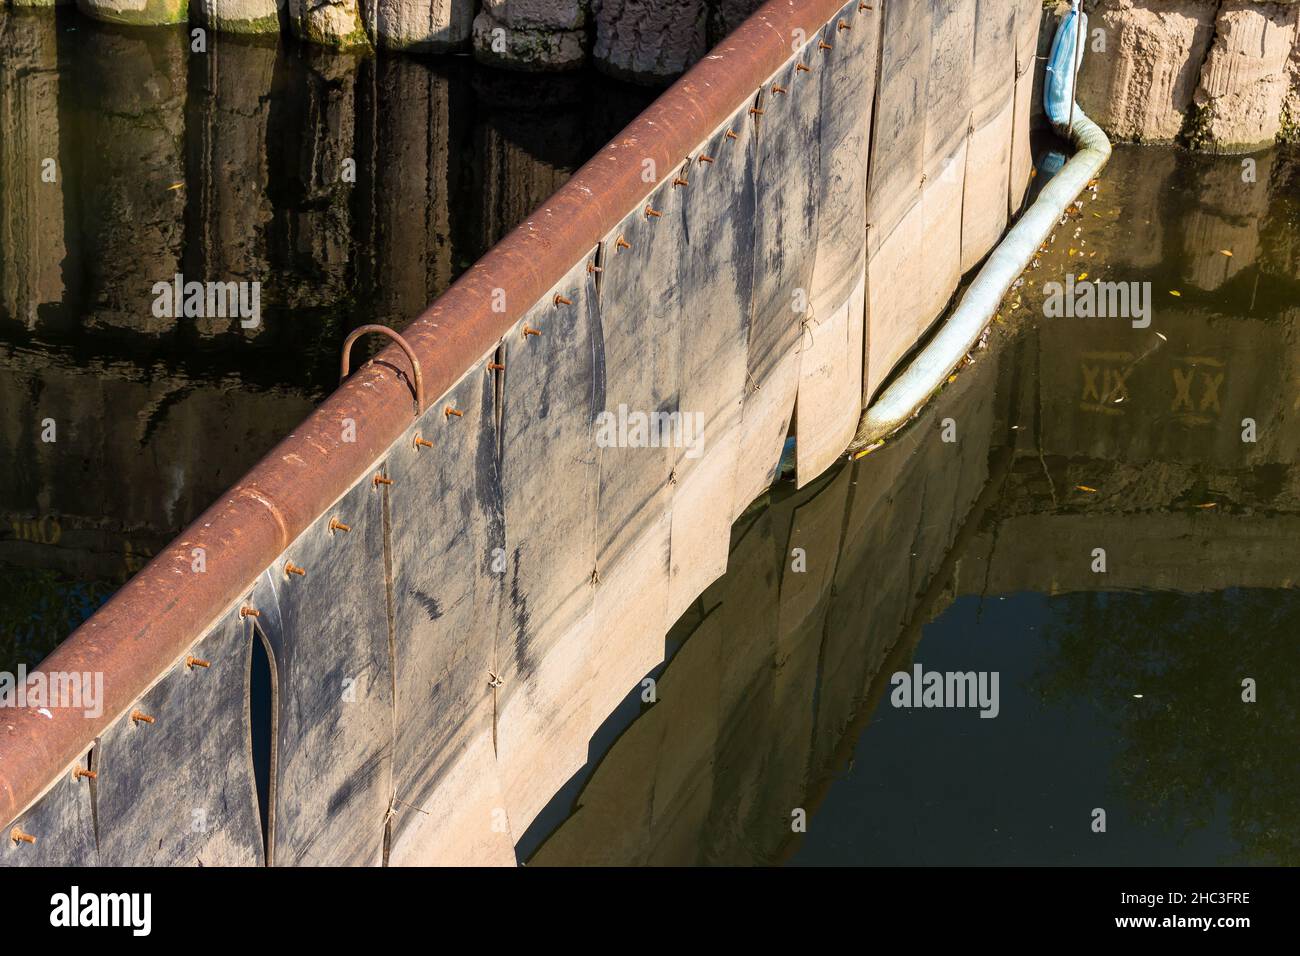 Struttura in cemento armato della presa d'acqua sul fiume Protva, Russia Foto Stock